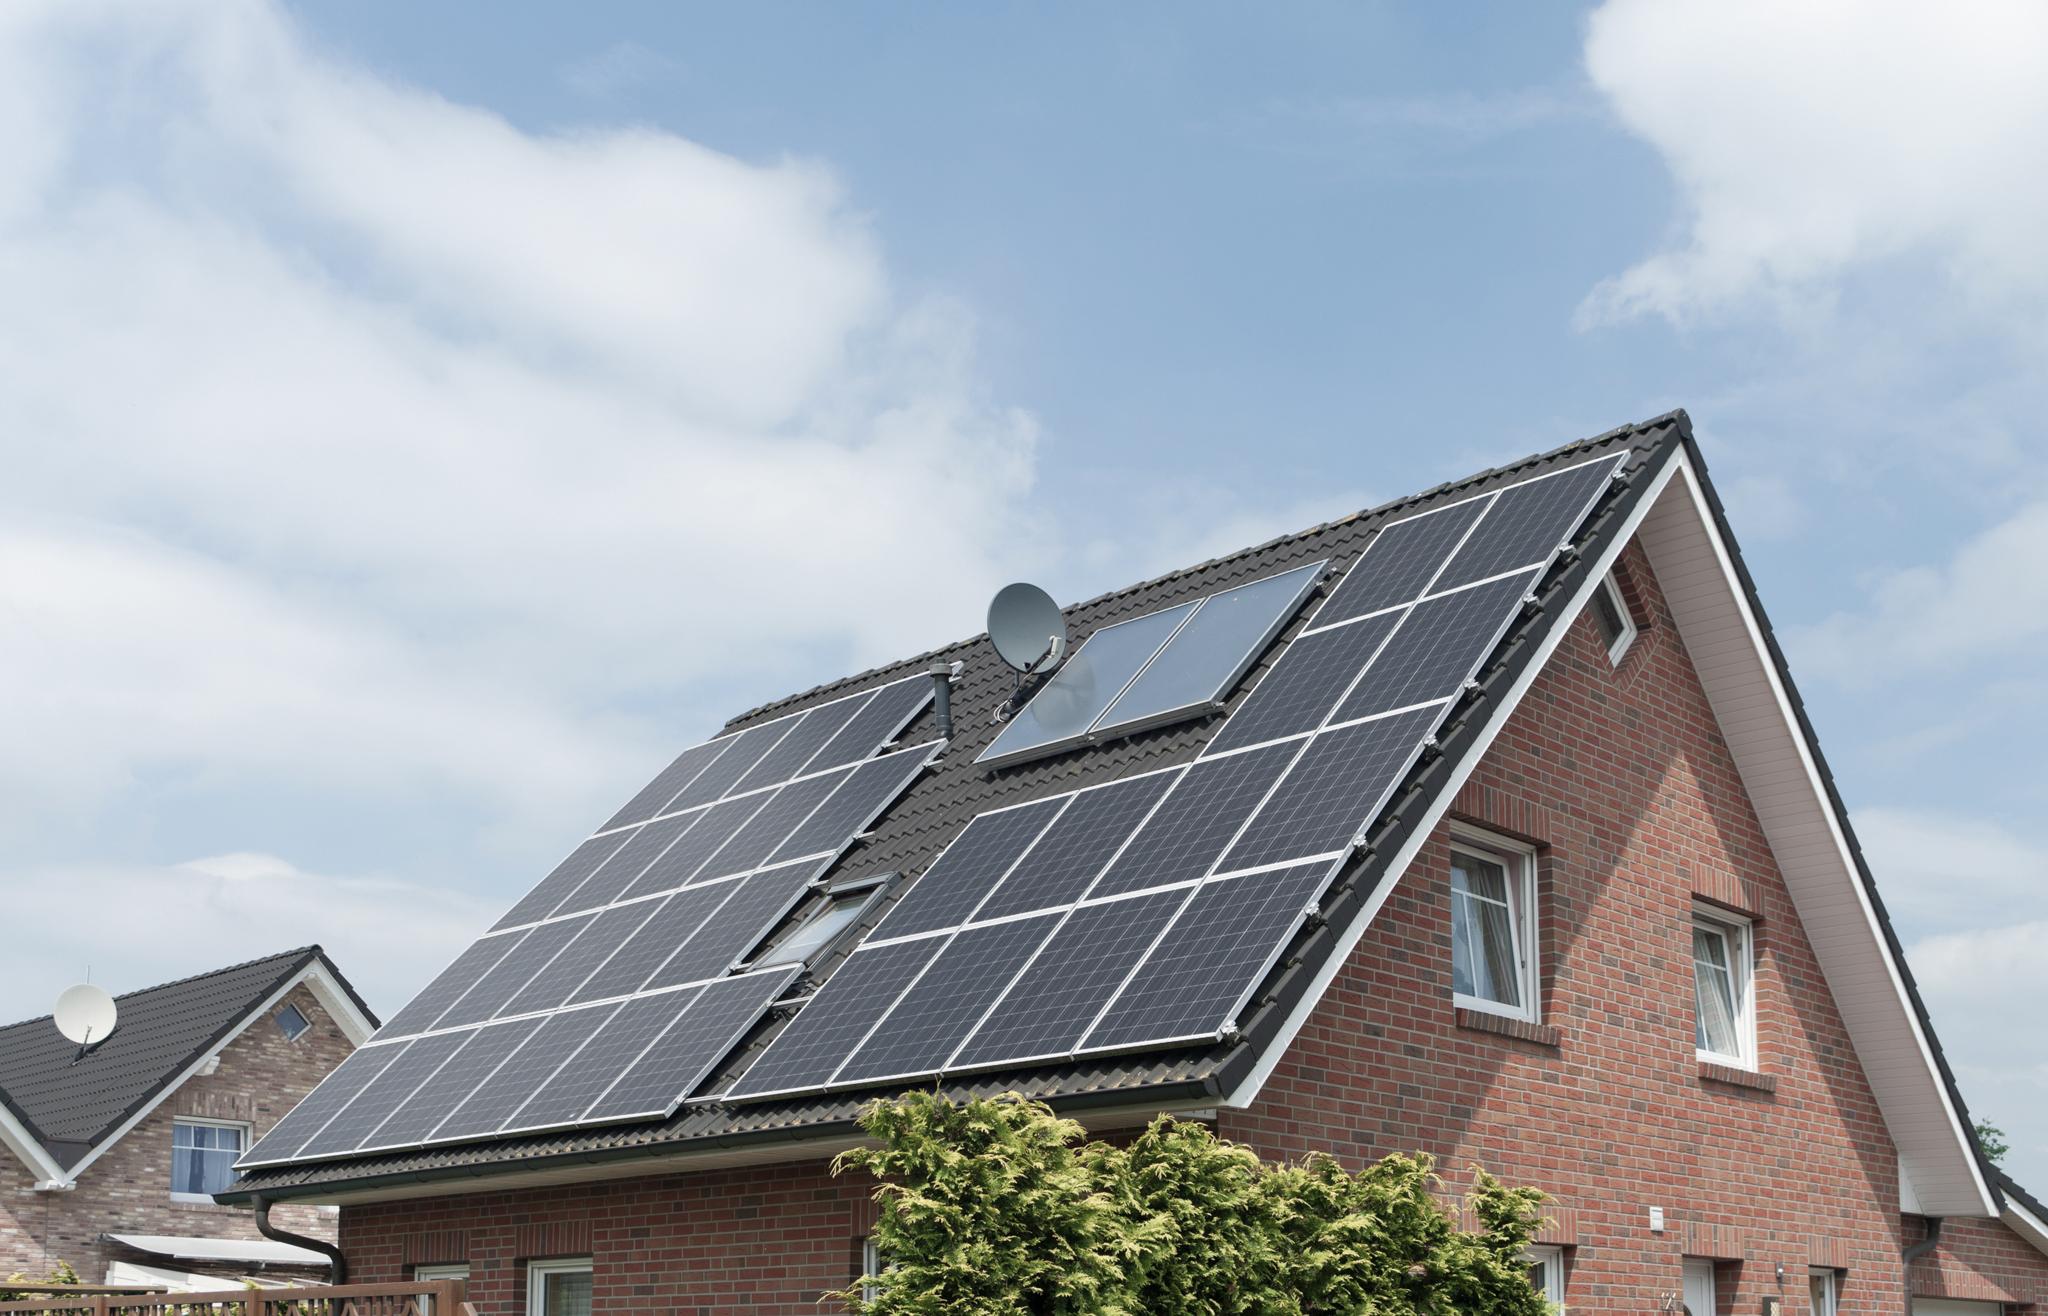 Einfamilienhaus mit zolar Solaranlage - Solardachziegel Vergleich 